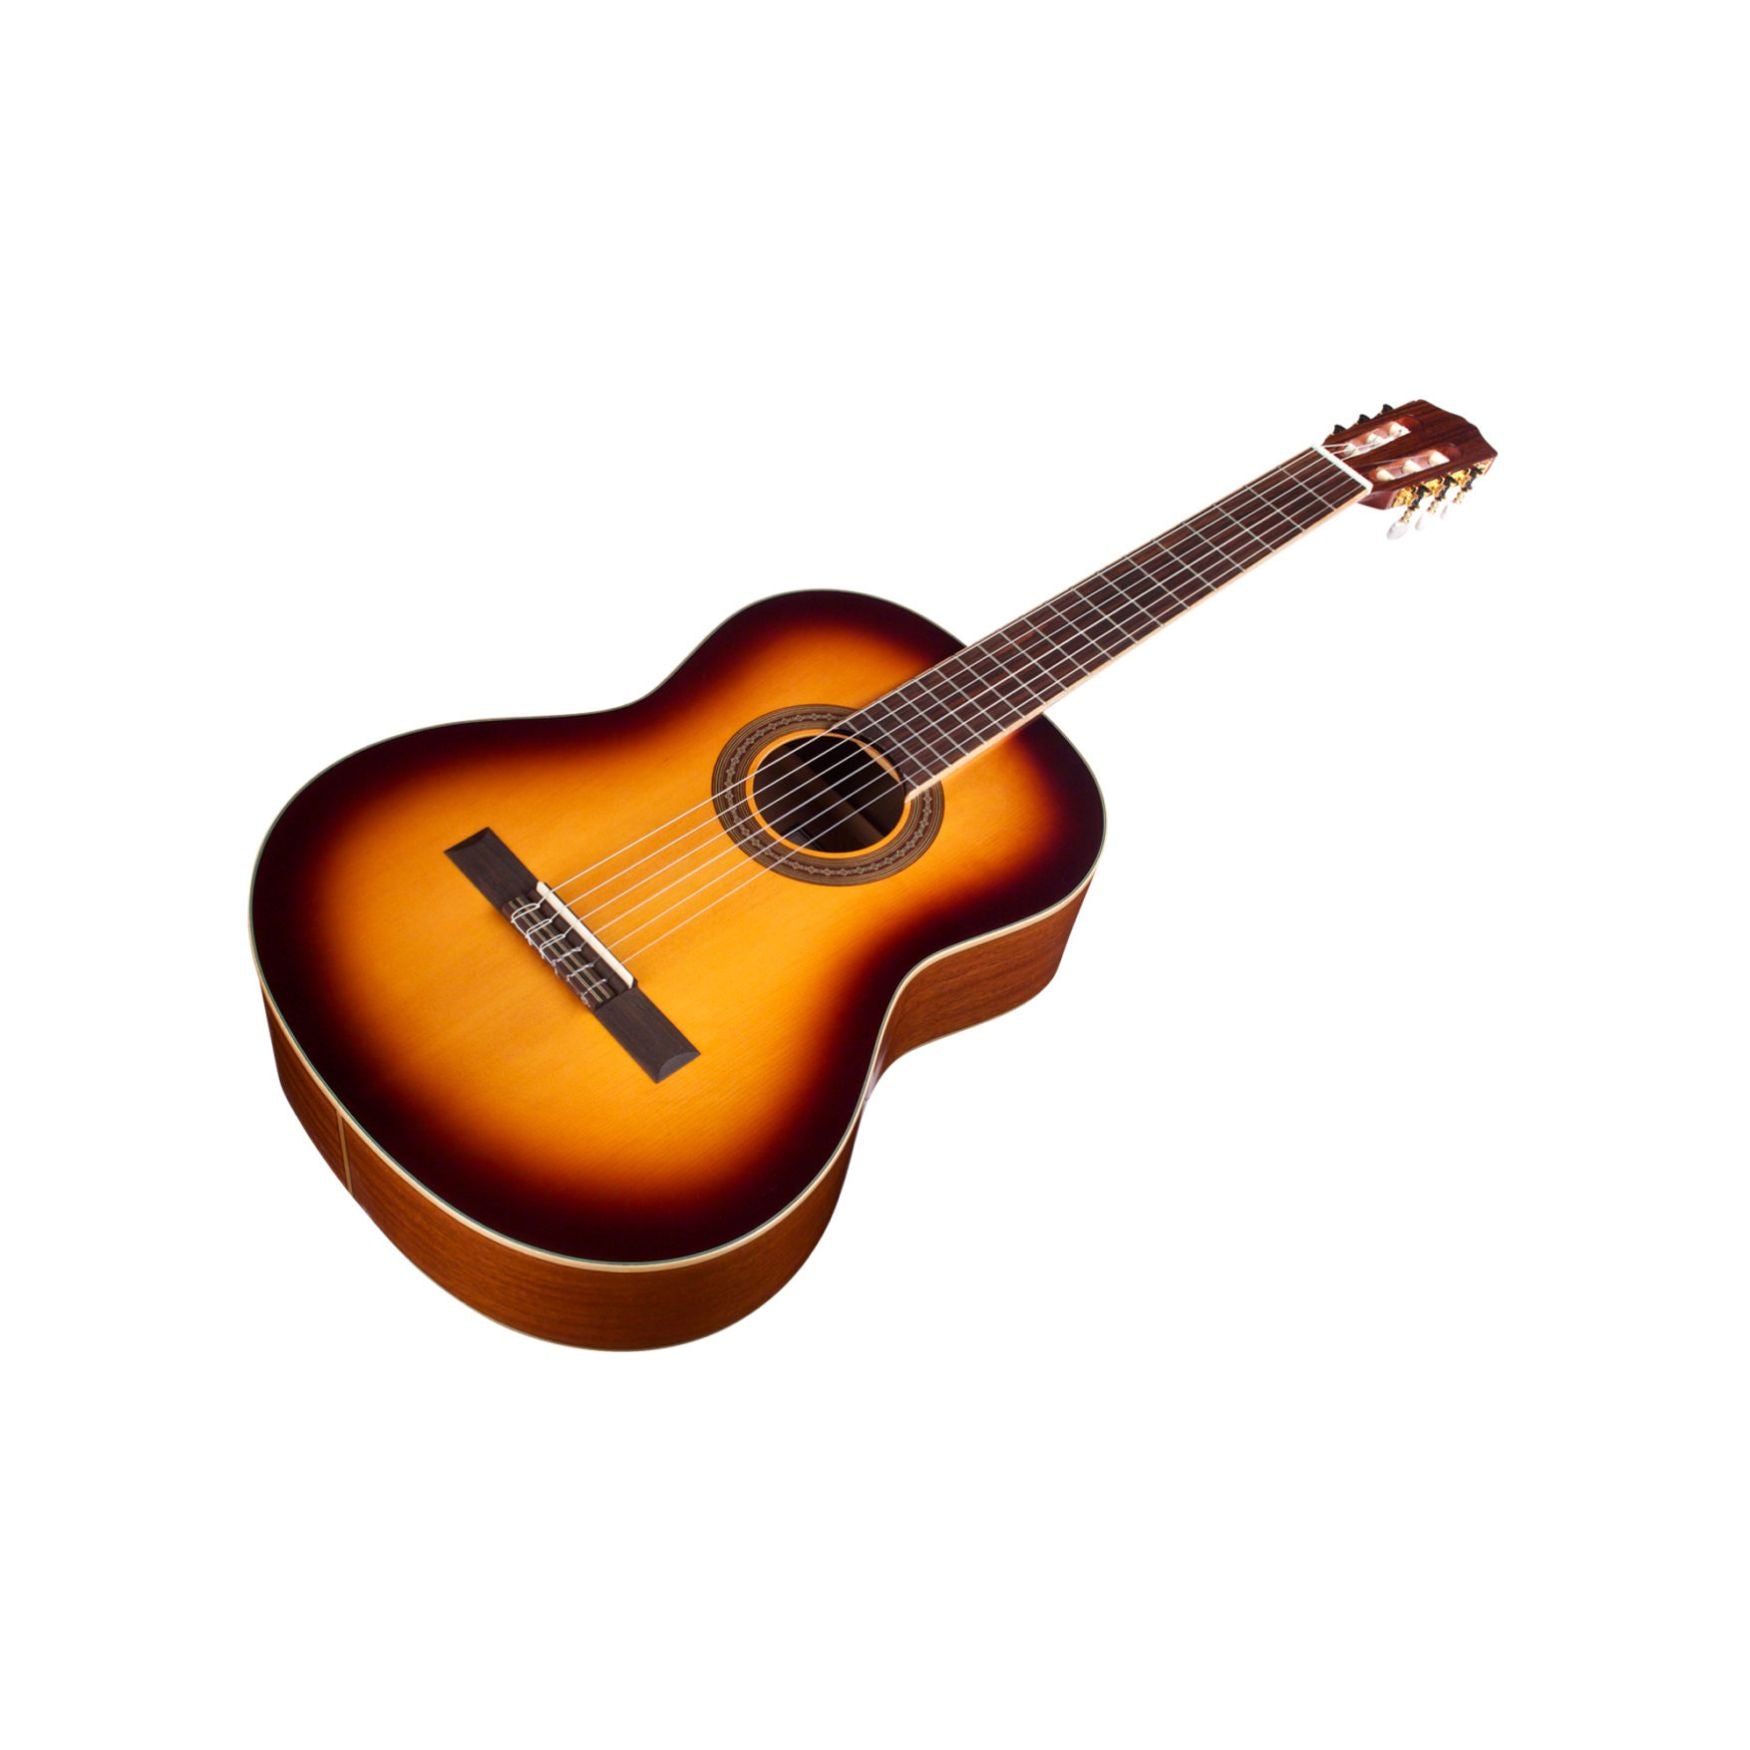 Cordoba C5 SB Nylon String Guitar, Sunburst